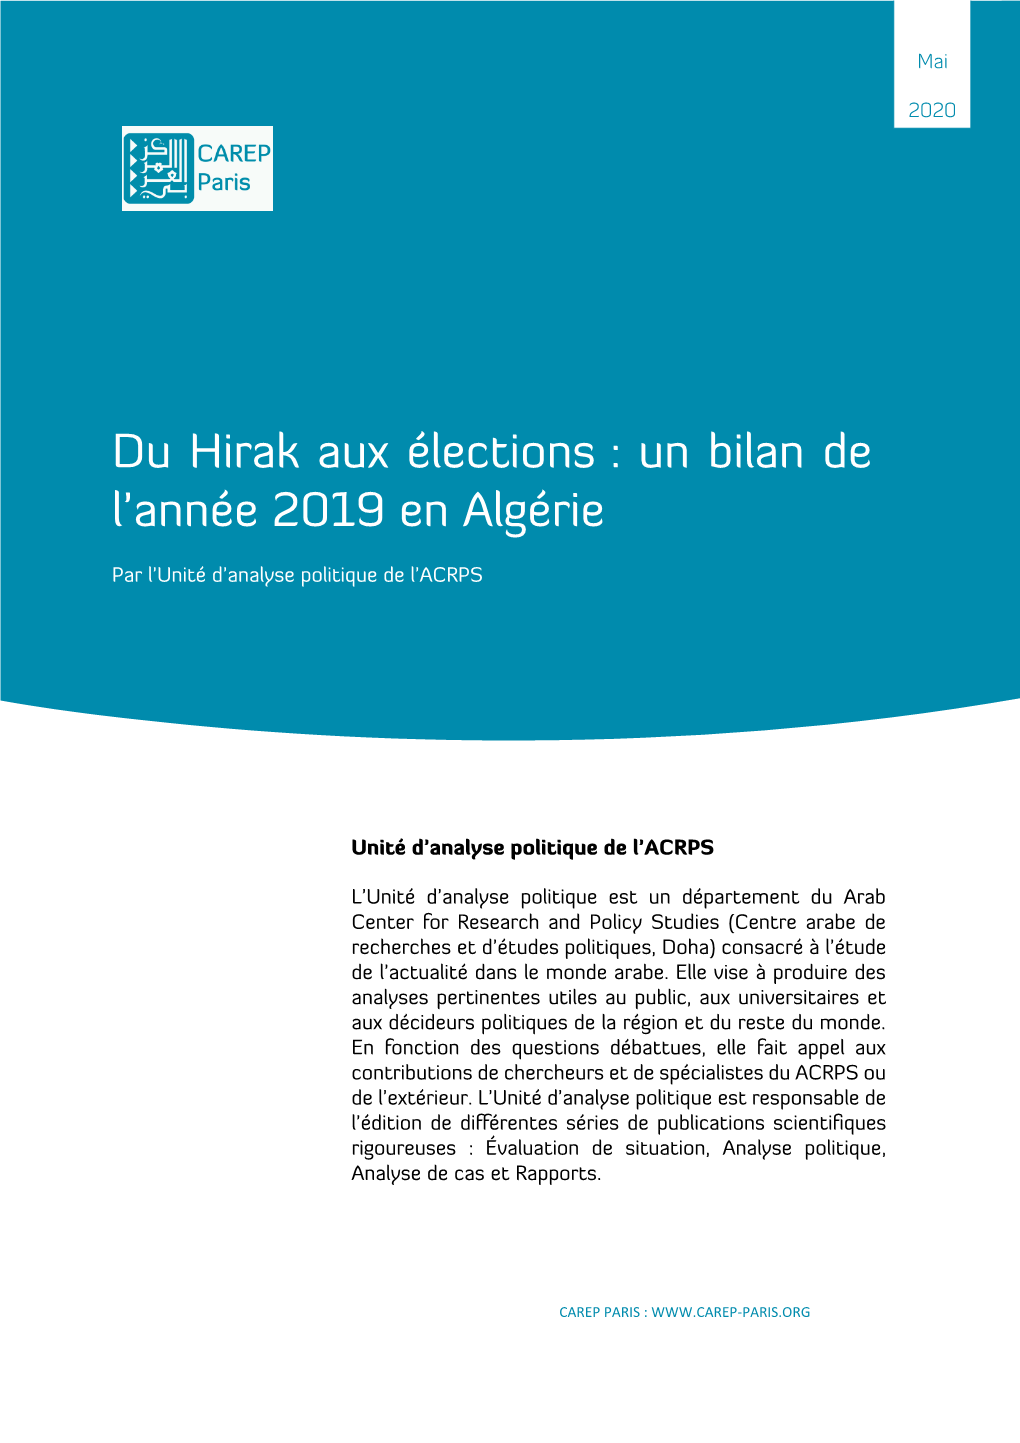 Du Hirak Aux Élections : Un Bilan De L'année 2019 En Algérie